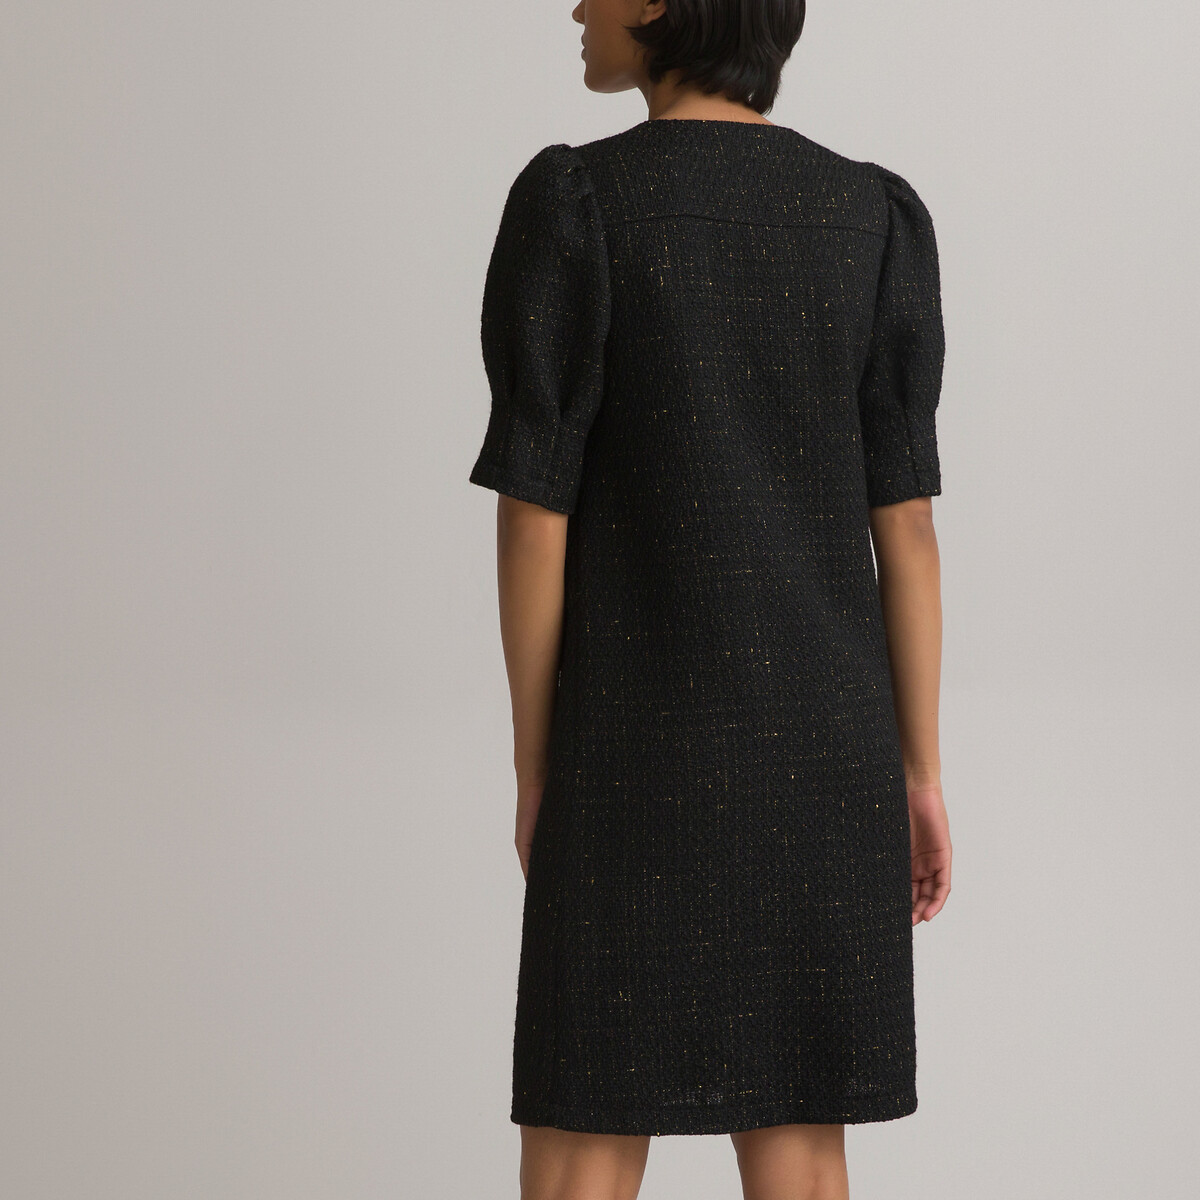 Платье LaRedoute Прямое короткое на пуговицах с короткими рукавами 40 черный, размер 40 - фото 4